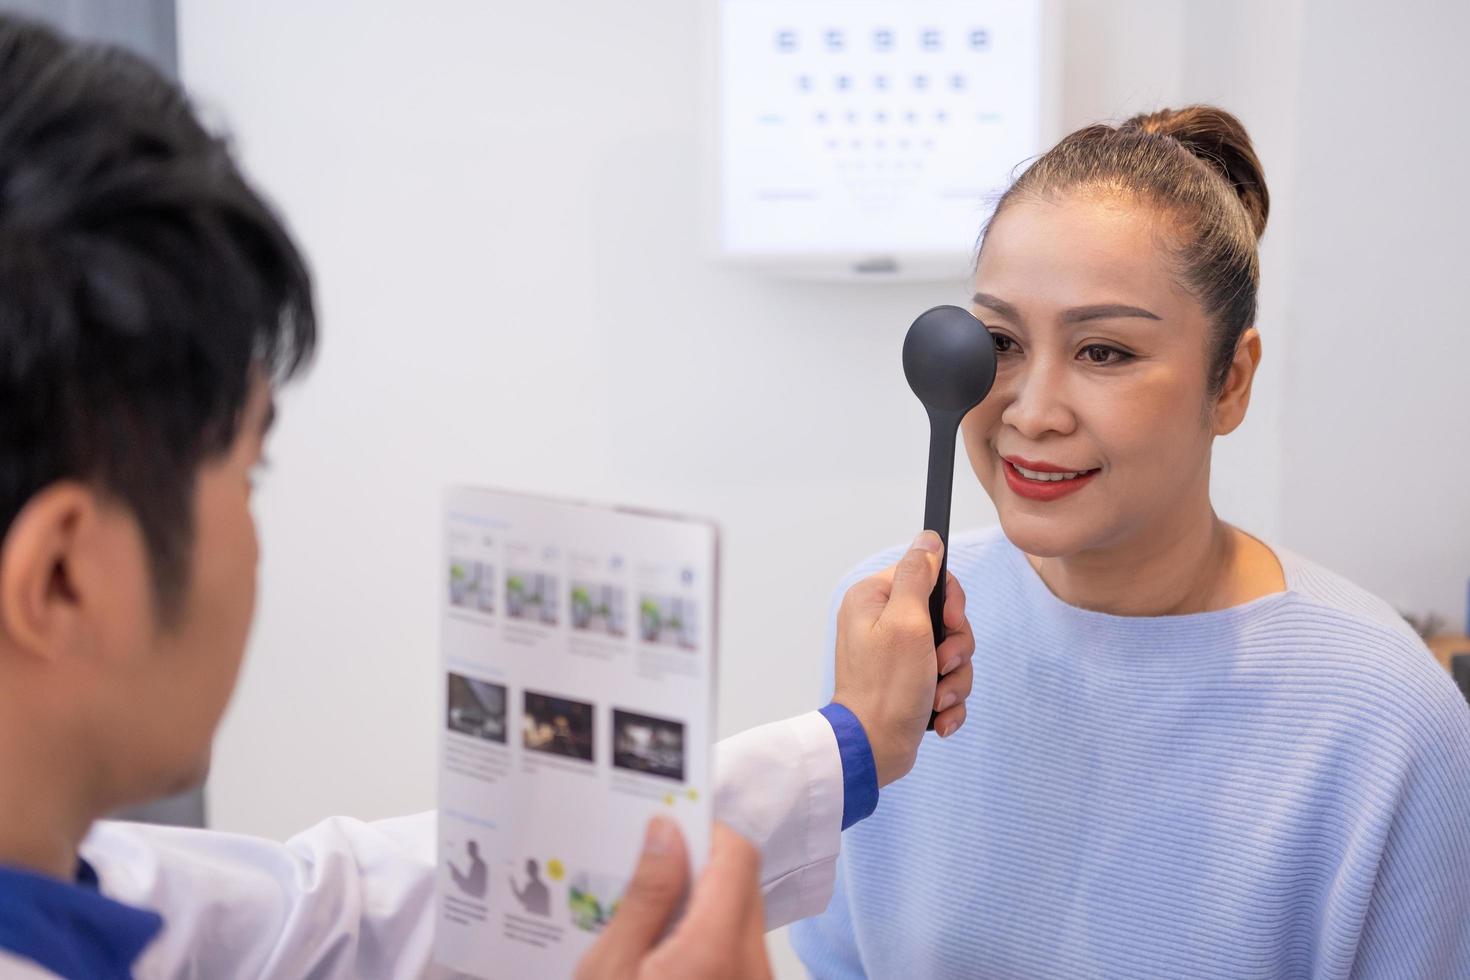 selektiv fokus på kvinnor ansikte. medan läkare använder sig av optometri Utrustning och rättegång glasögon ram till undersöka öga visuell systemet av äldre patient kvinnor med professionell maskin och teknik. foto